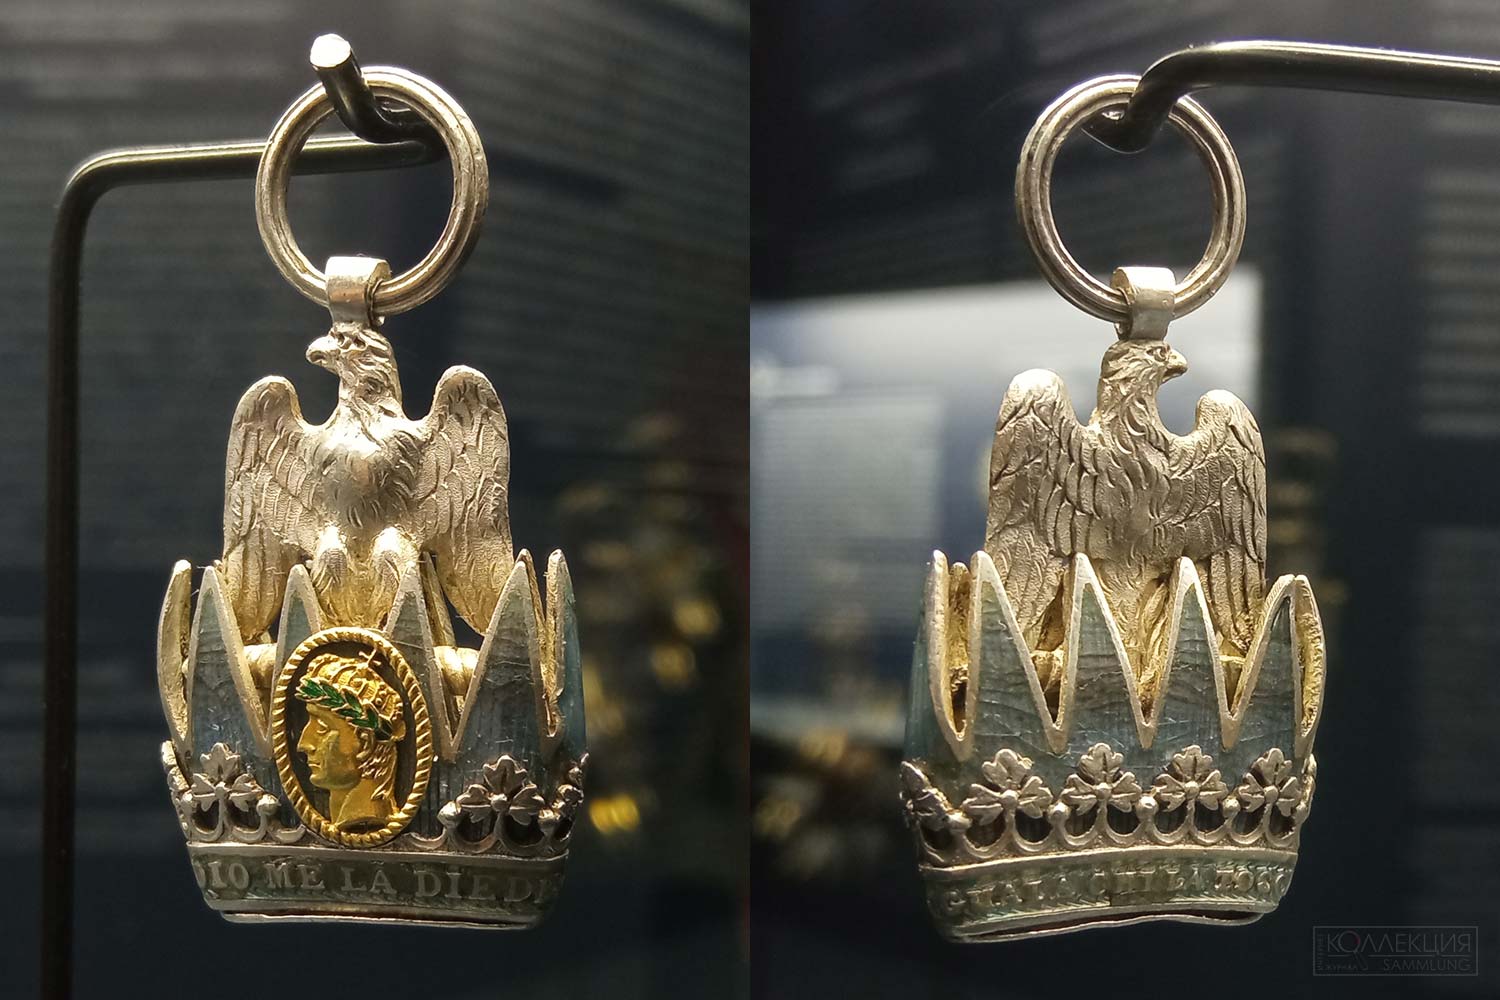 Знак ордена Железной короны. Первая Французская империя (для королевства Италии). 1805—1814